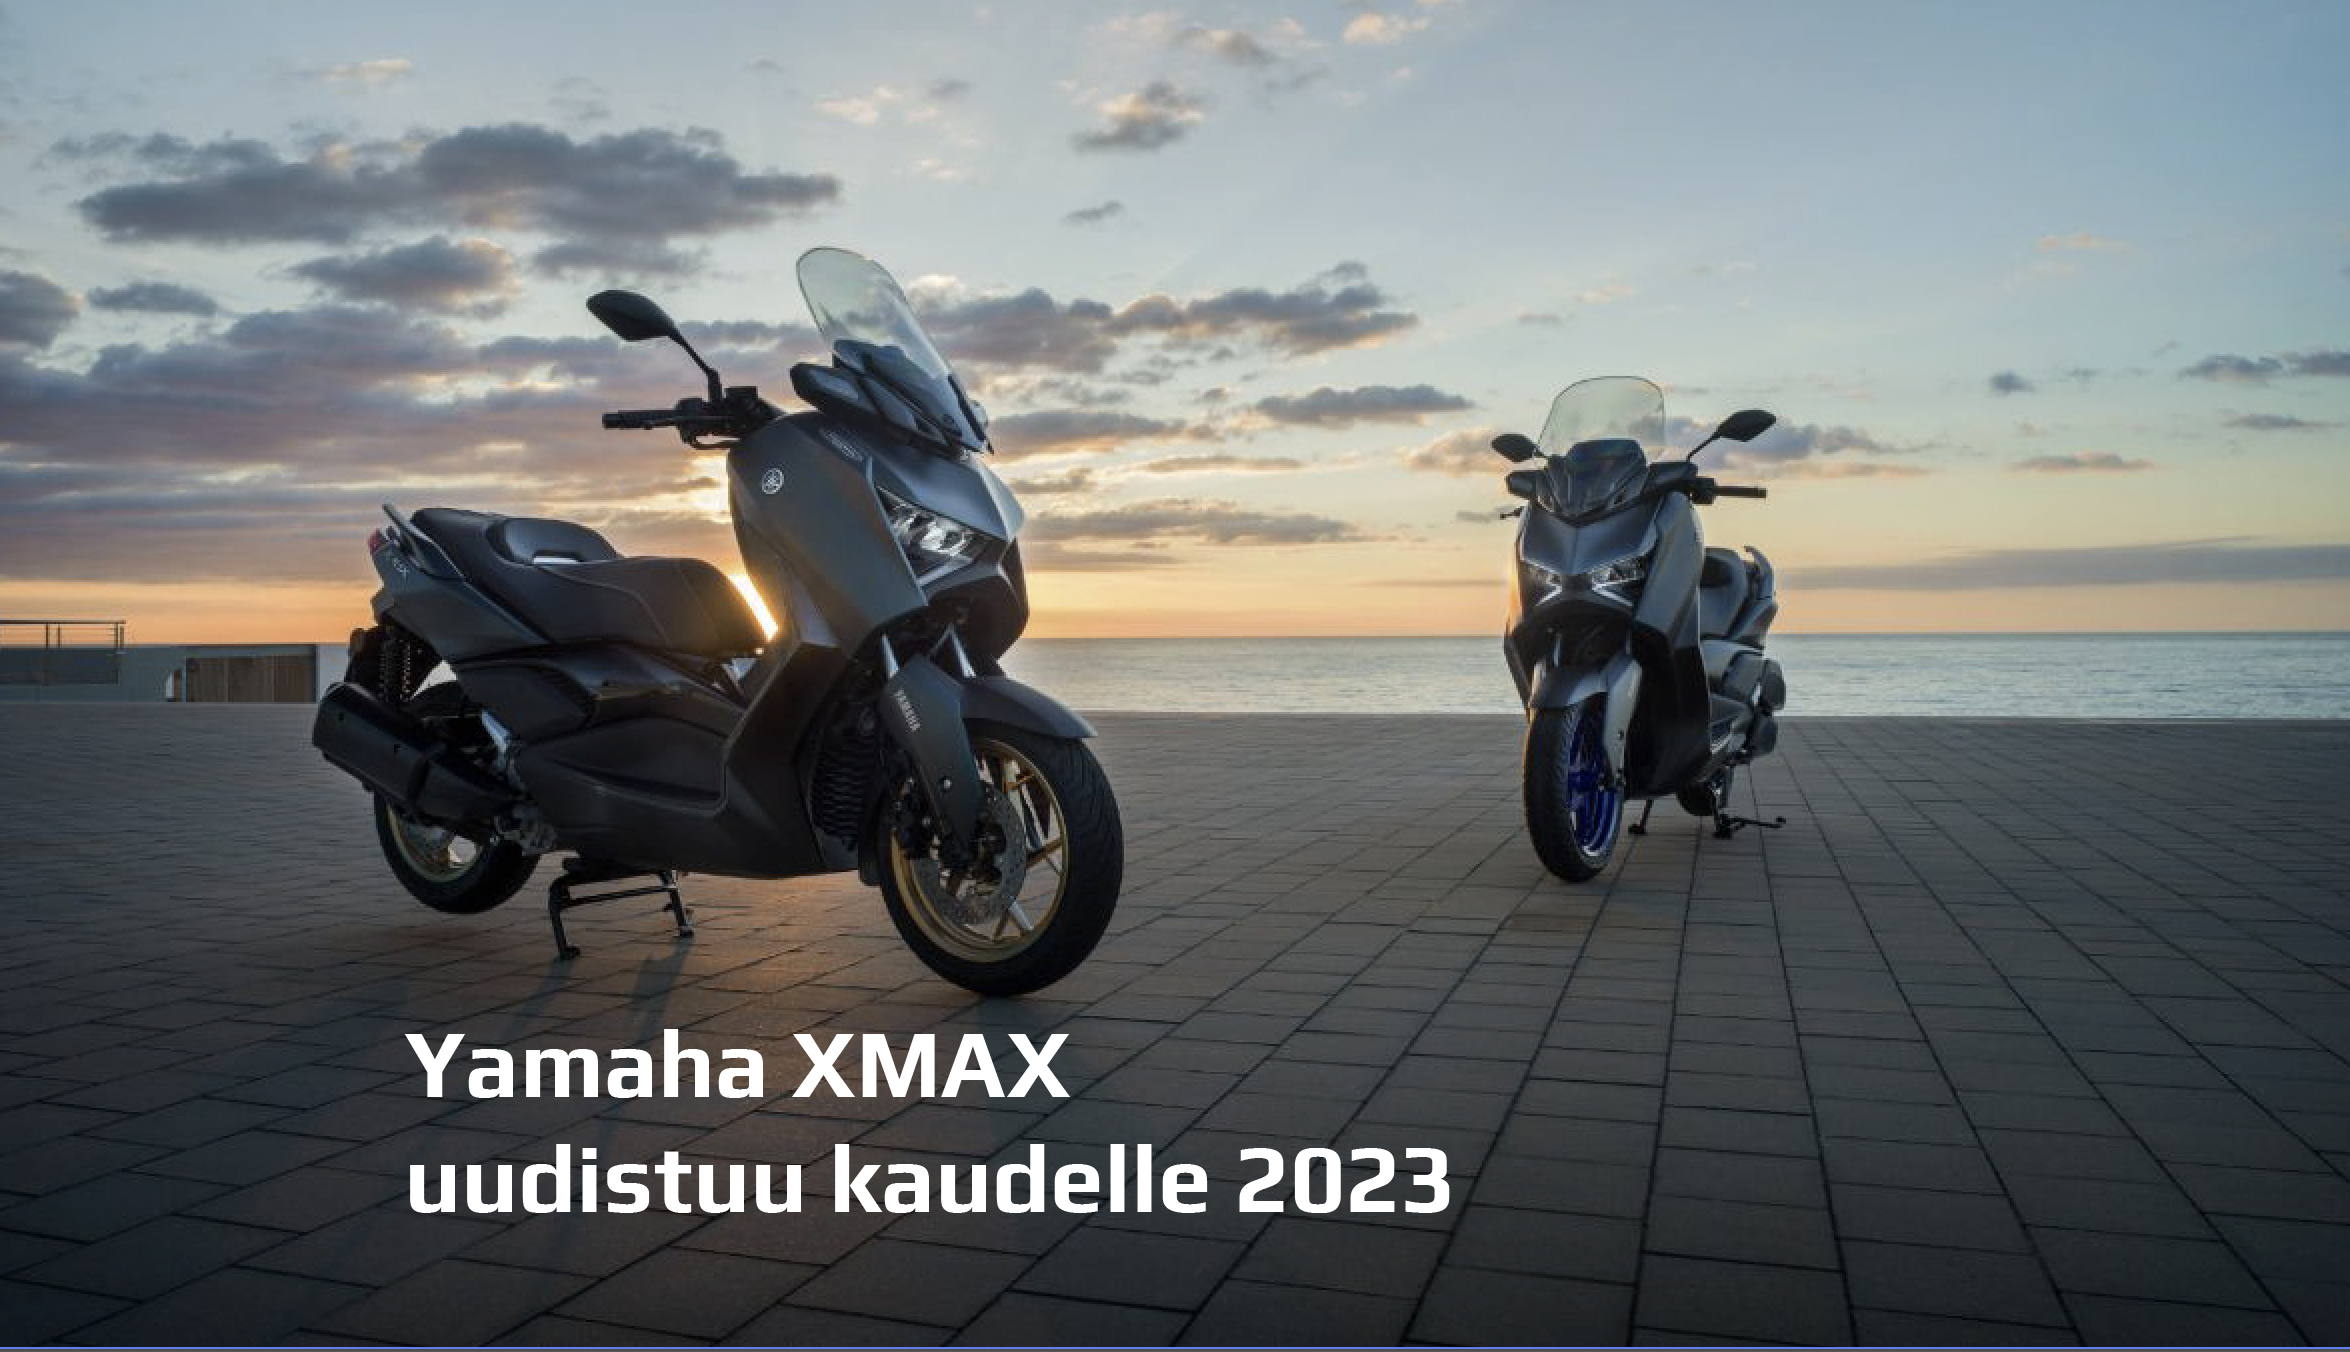 Yamahan XMAX-skootterimallisto päivittyy kaudelle 2023